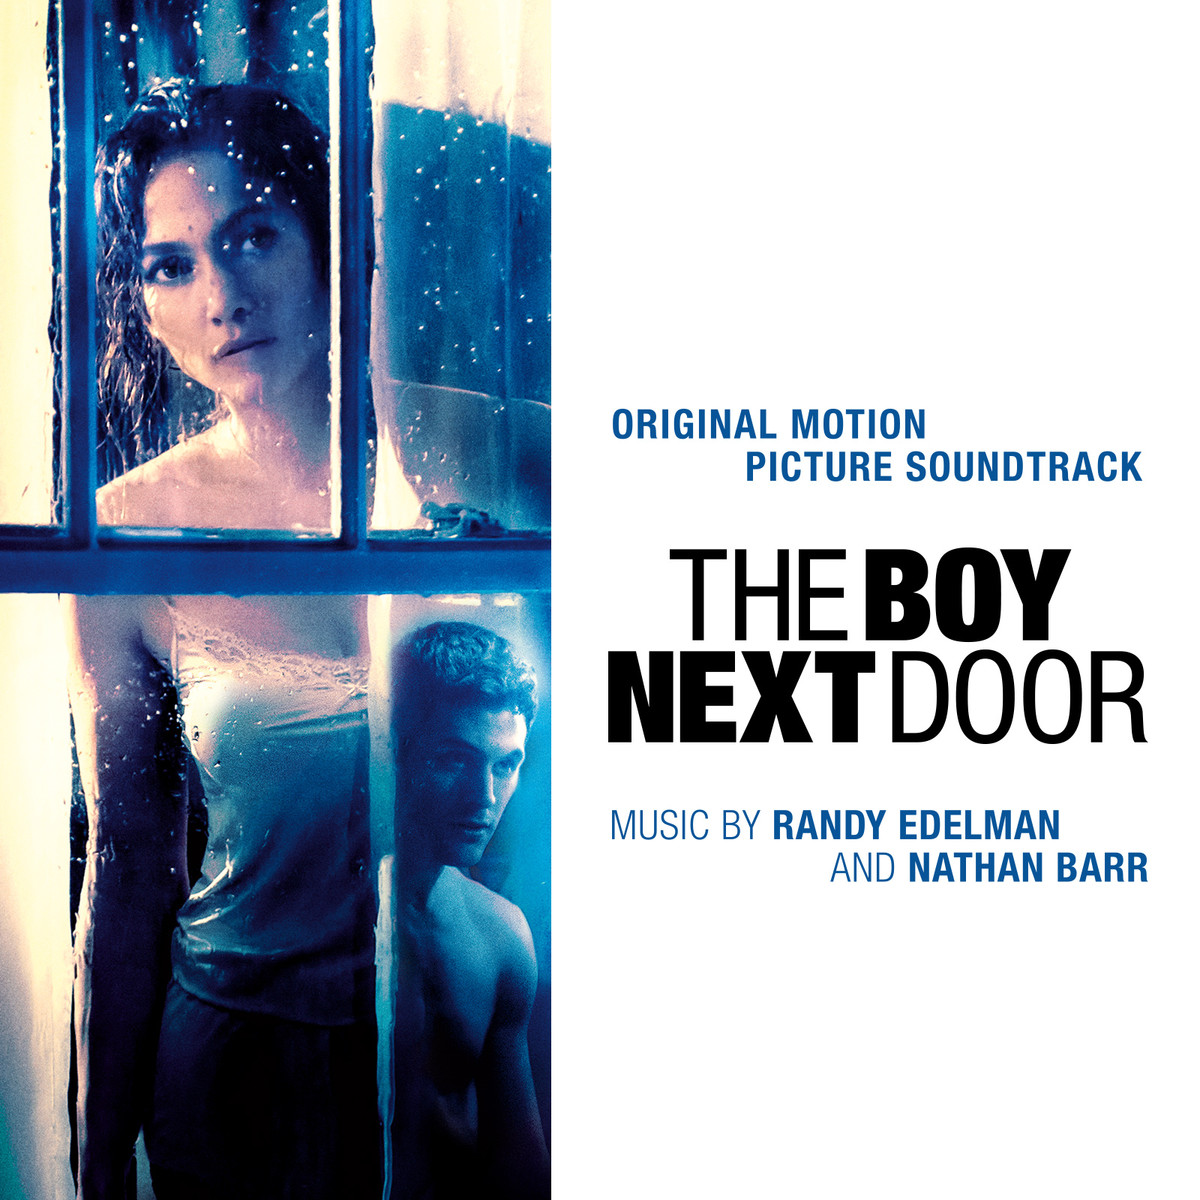 The Boy Next Door Part 3